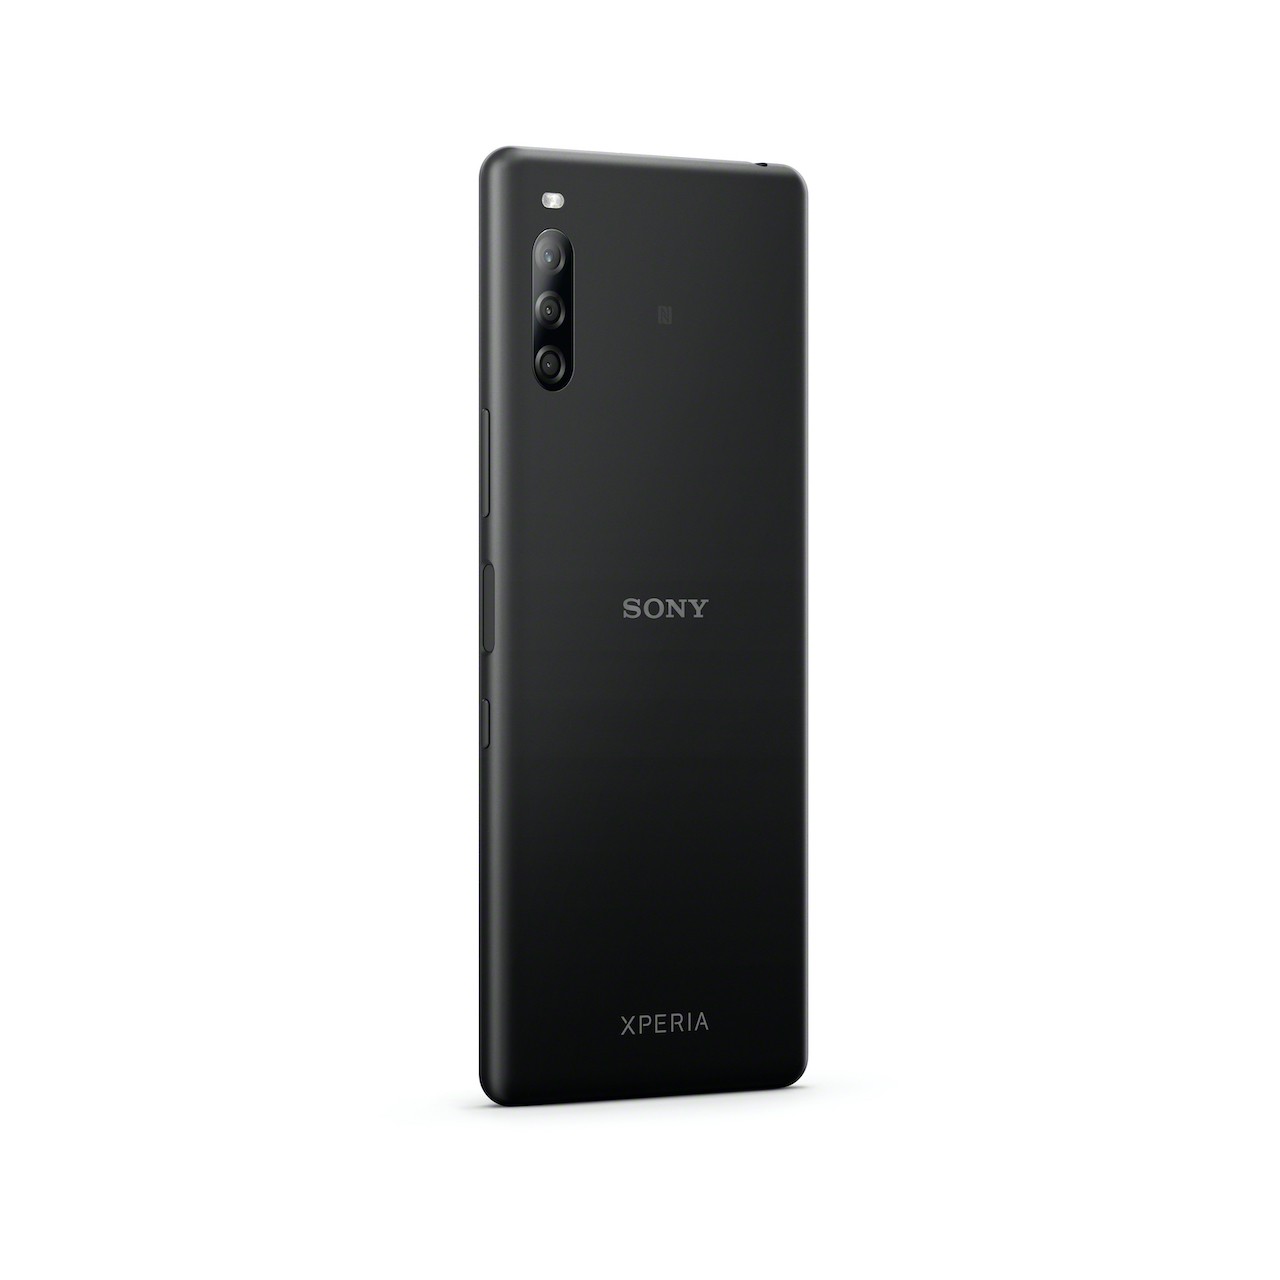 Sony Xperia L4, överraskning tillkännagivande av den nya entry-level 2